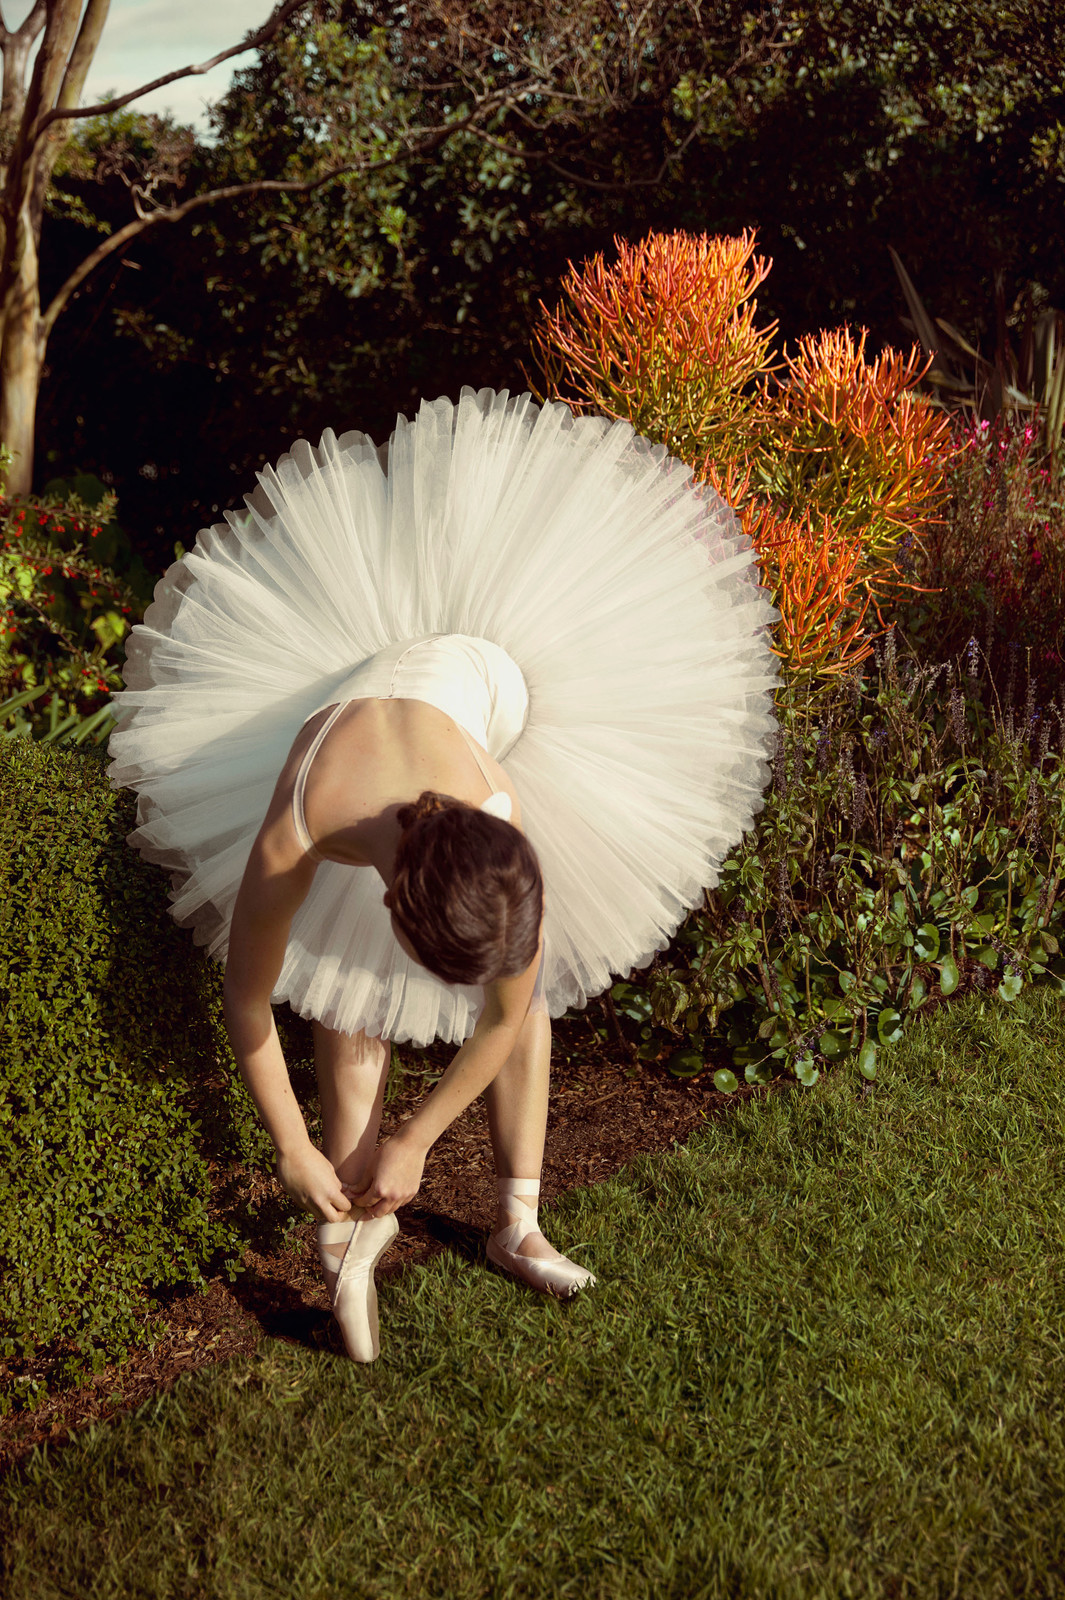 Season 2019 - The Australian Ballet